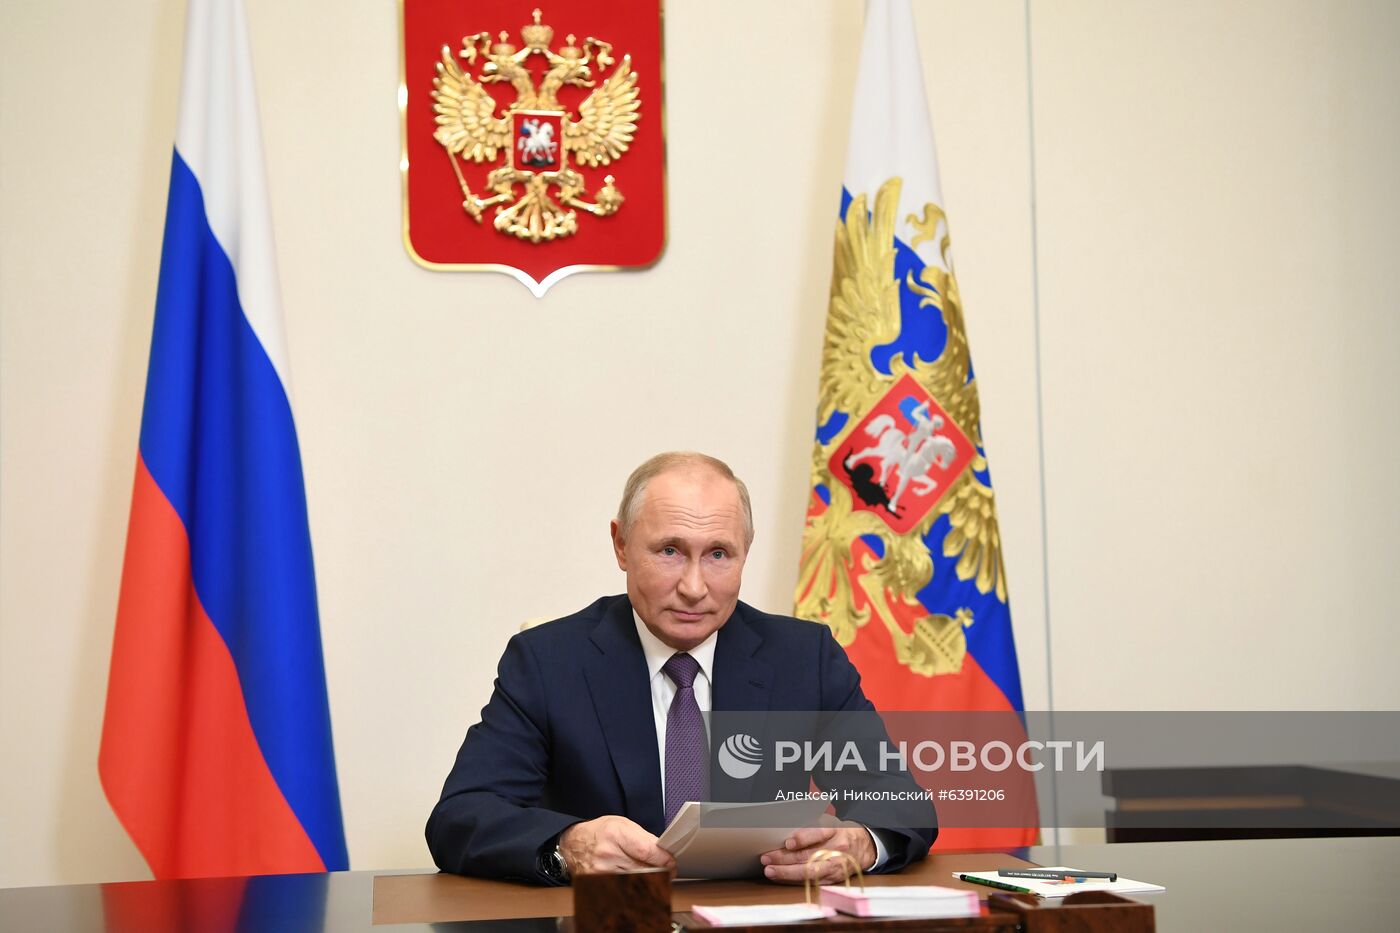 Президент РФ В. Путин выступил с обращением к участникам форума "Уроки Нюрнберга"